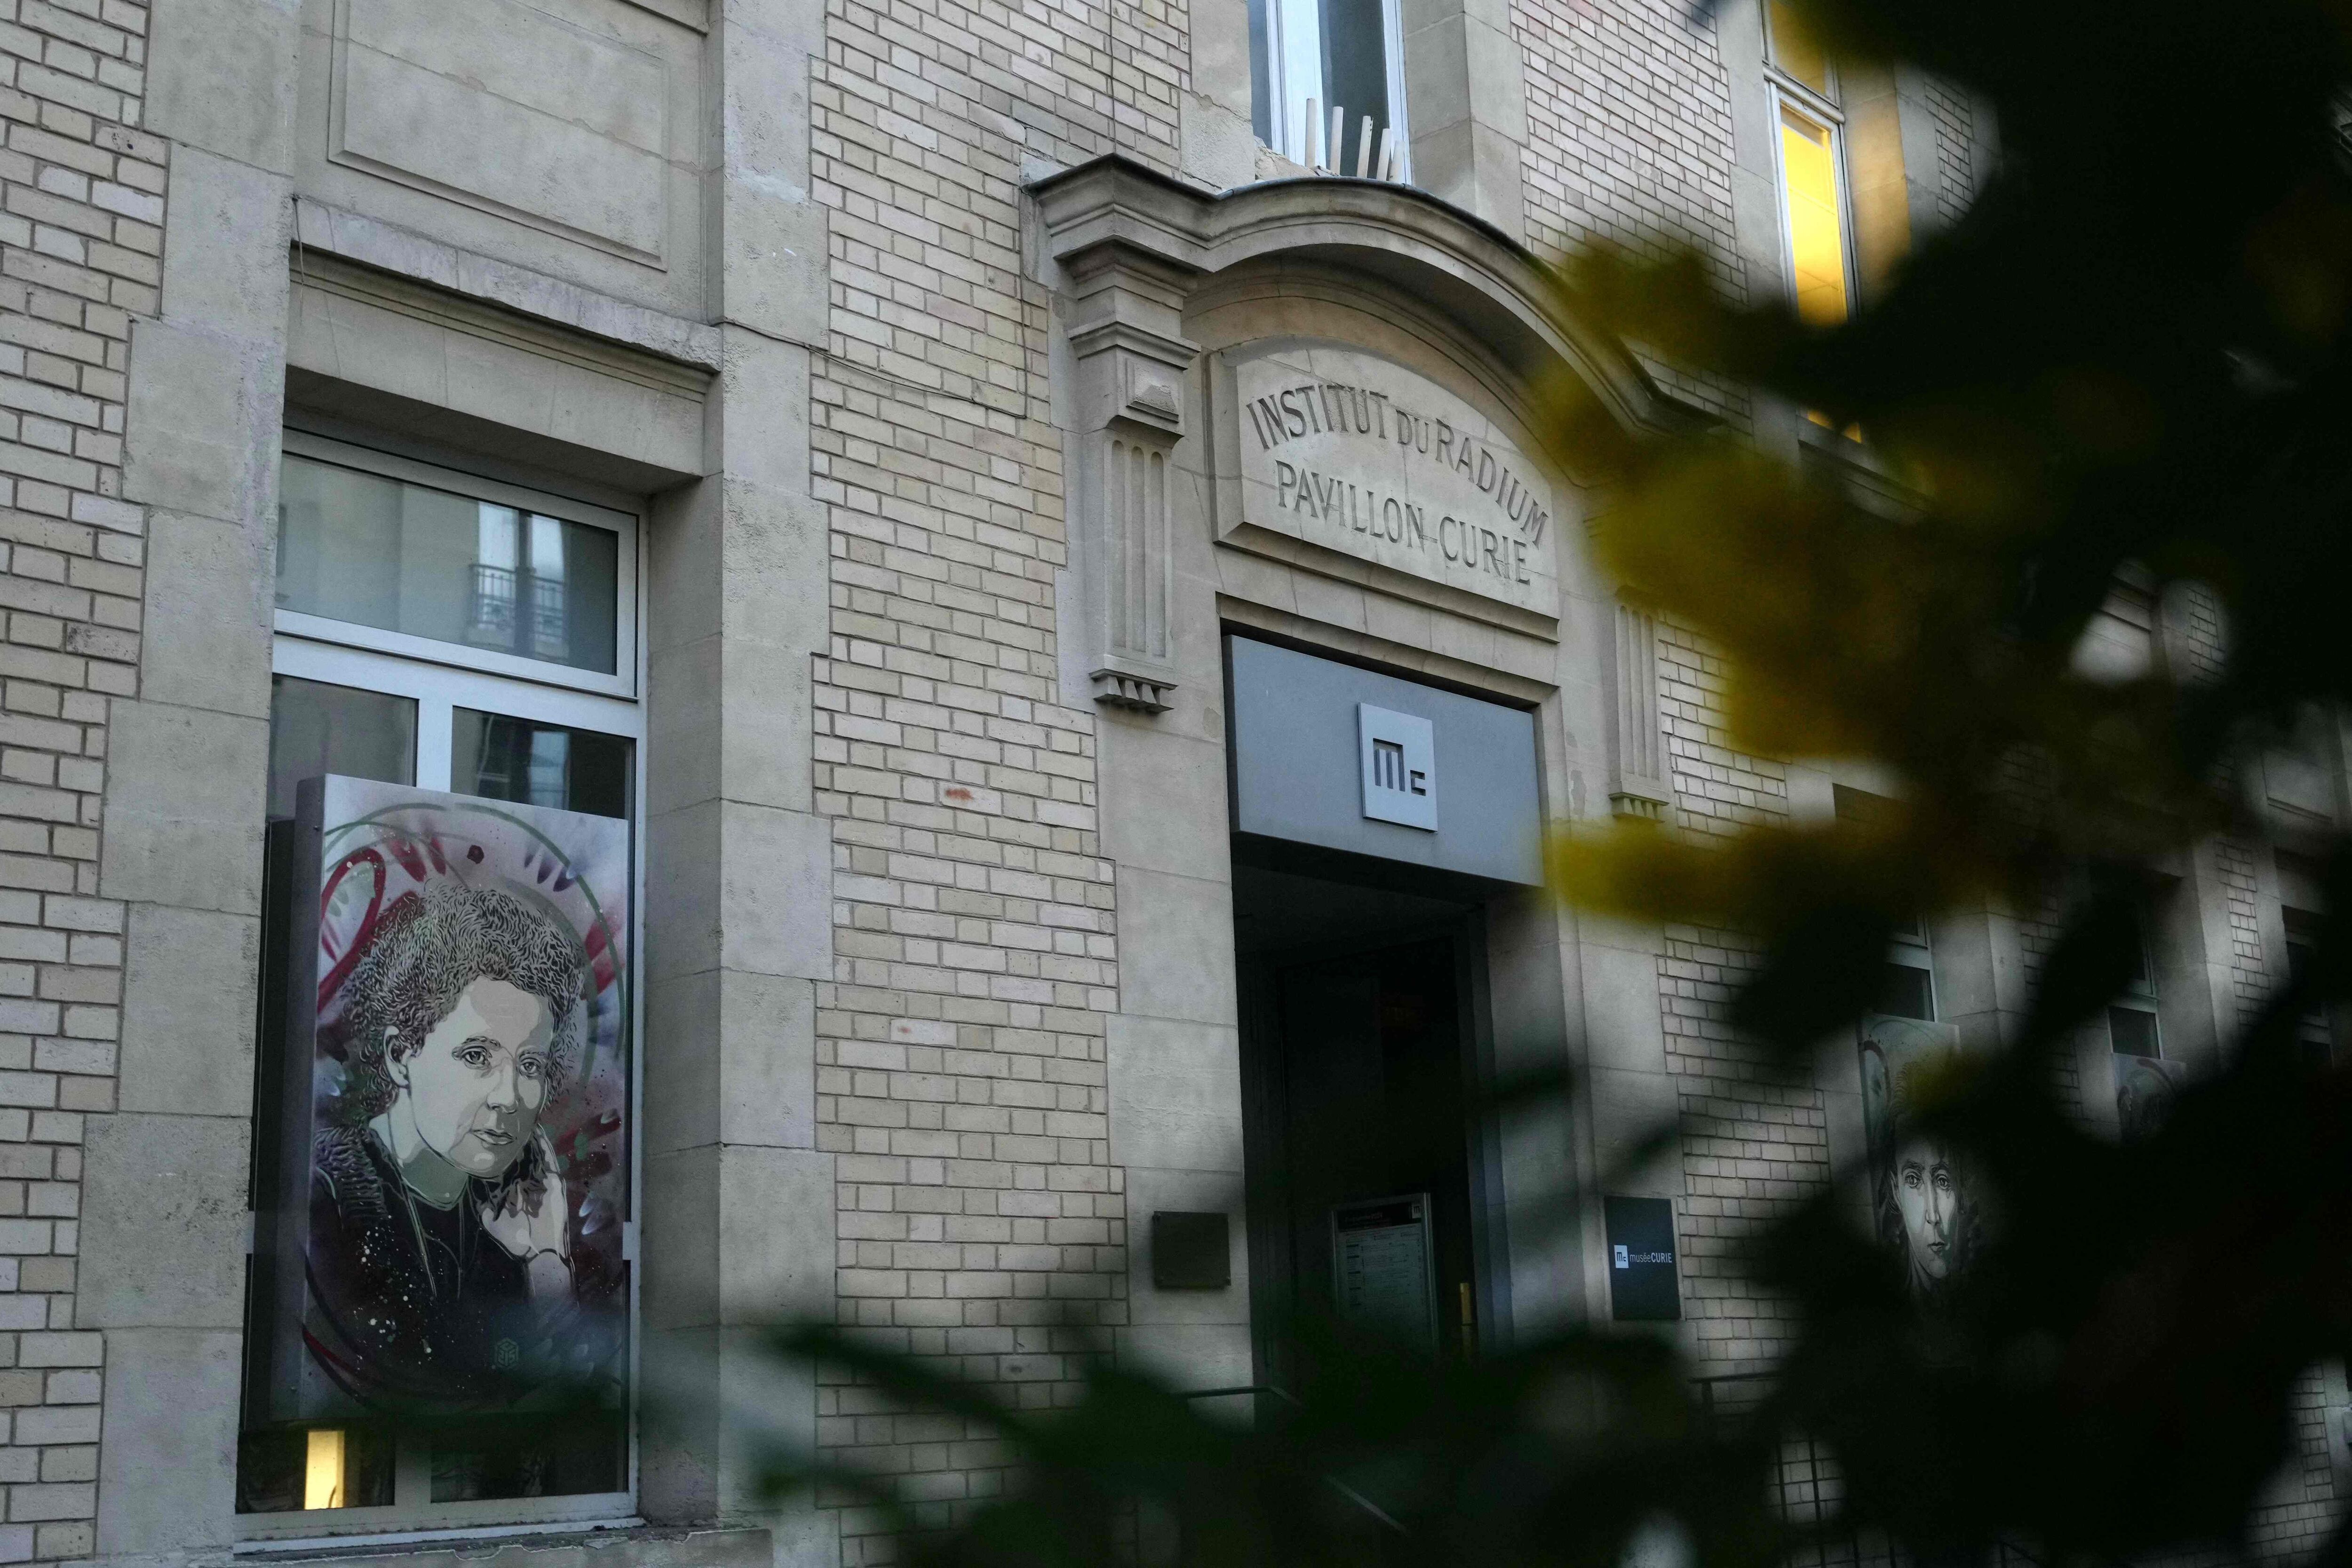 La entrada del Instituto del Radio, el sitio histórico del laboratorio de la física y química polaco-francesa Marie Curie.